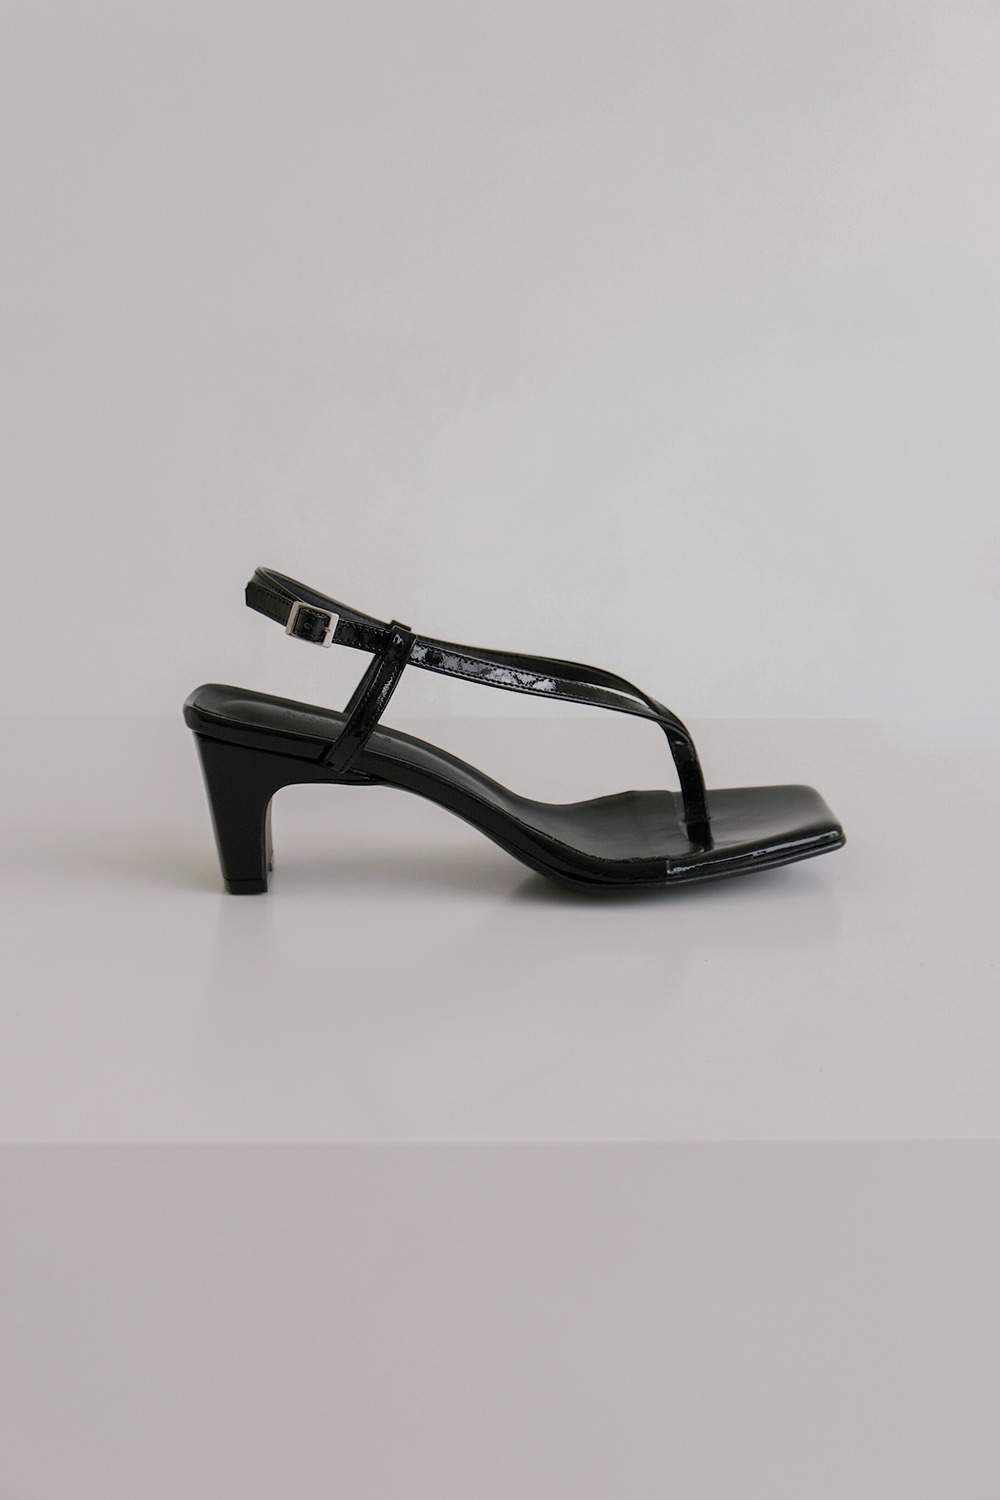 ANTHÈSE Pierre flip-flop heel, black (10%)